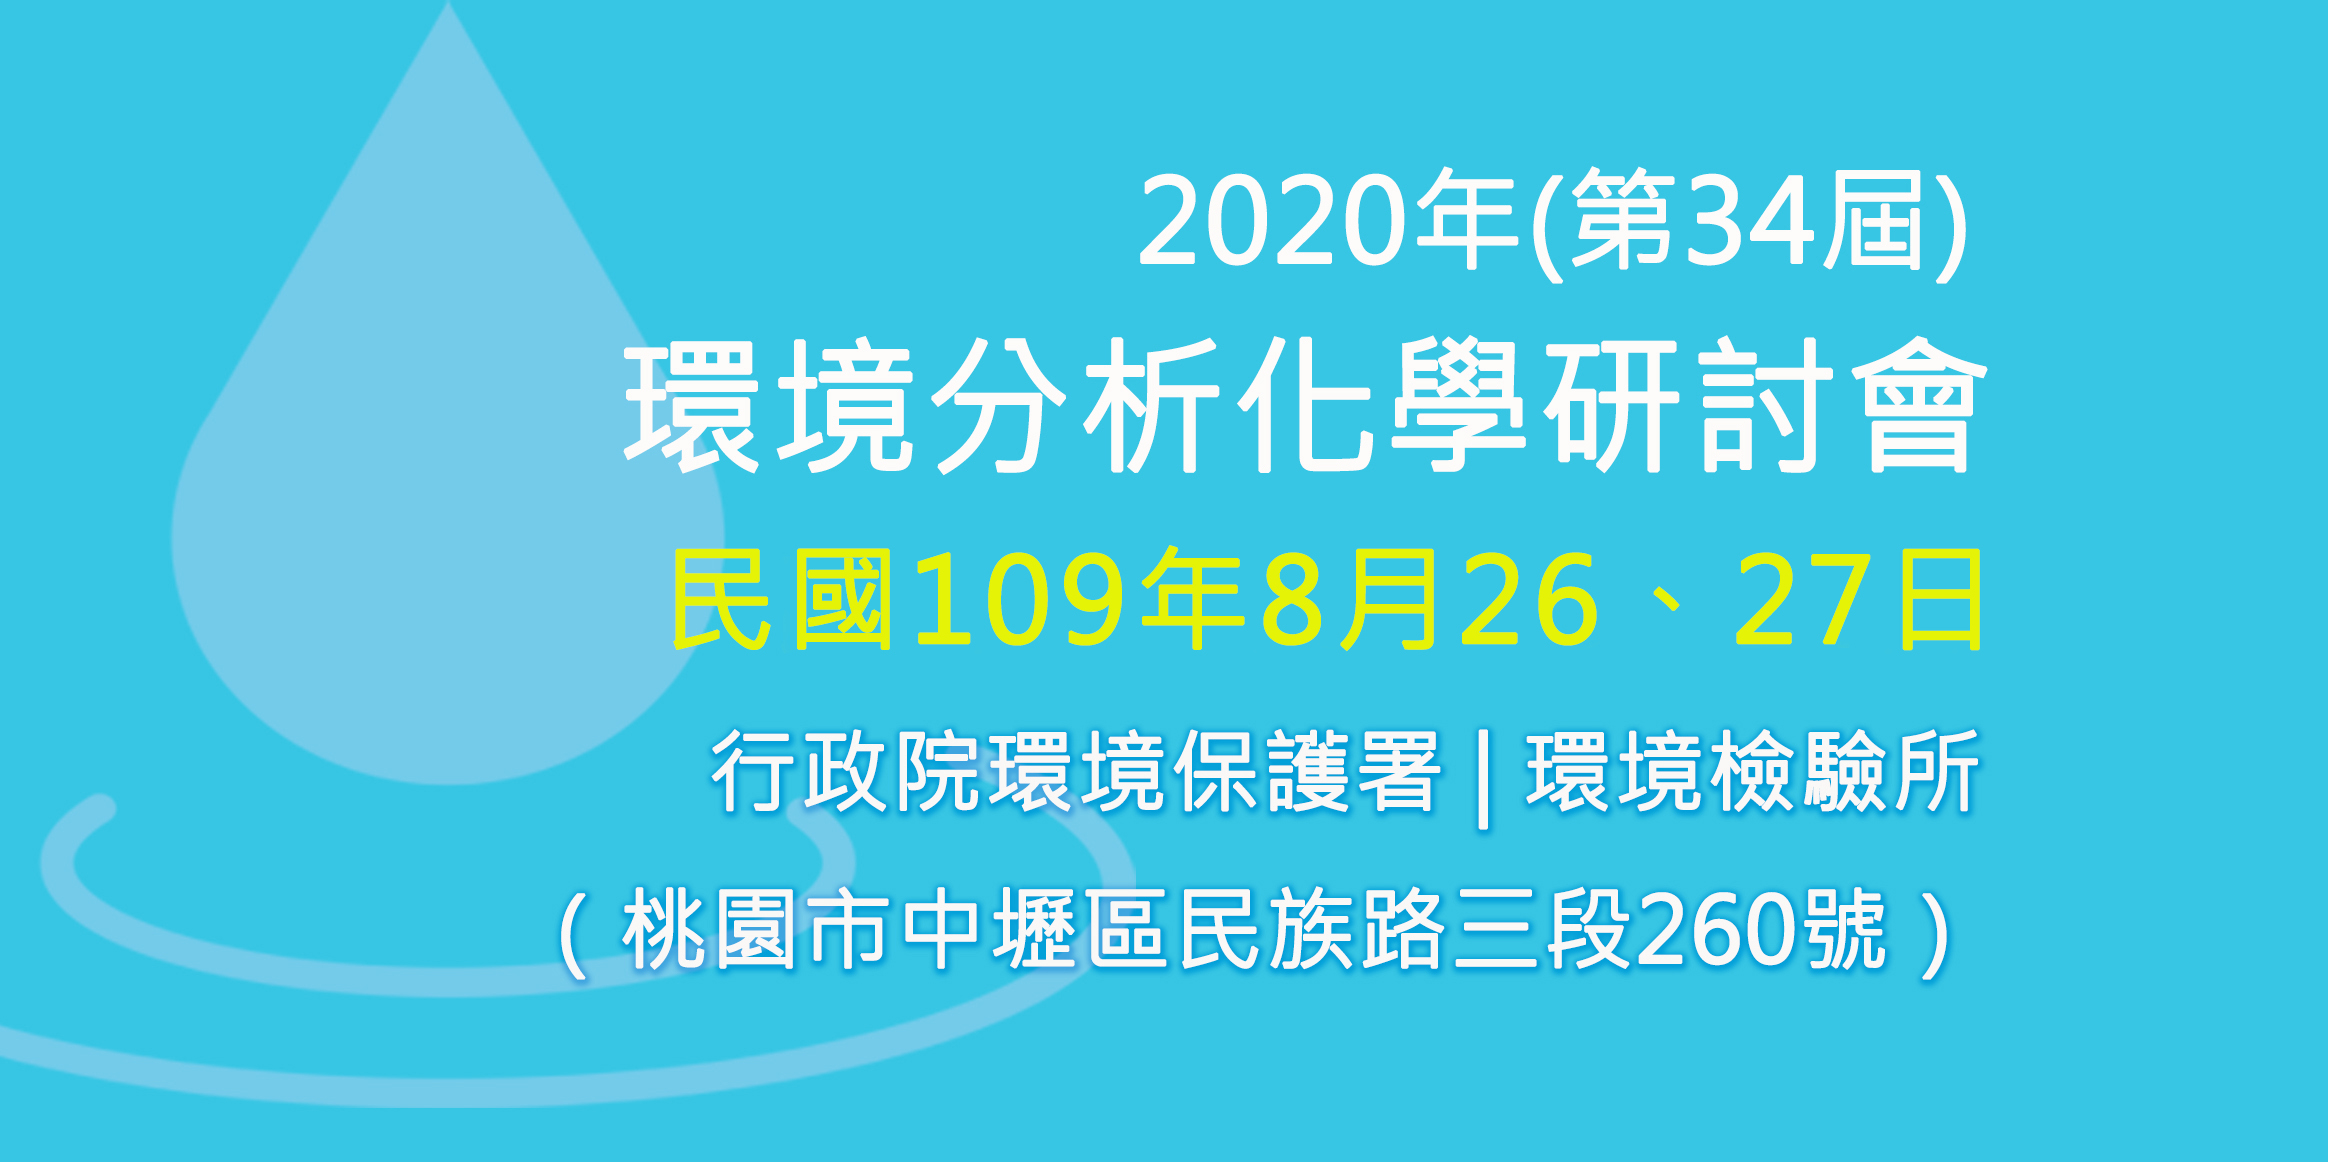 2020年(第34屆)環境分析化學研討會-超極生技於2020年8月26日至27日參與 2020年(第34屆)環境分析化學研討會 ，推廣全球首創、免校正酸鹼檢測系統。
            